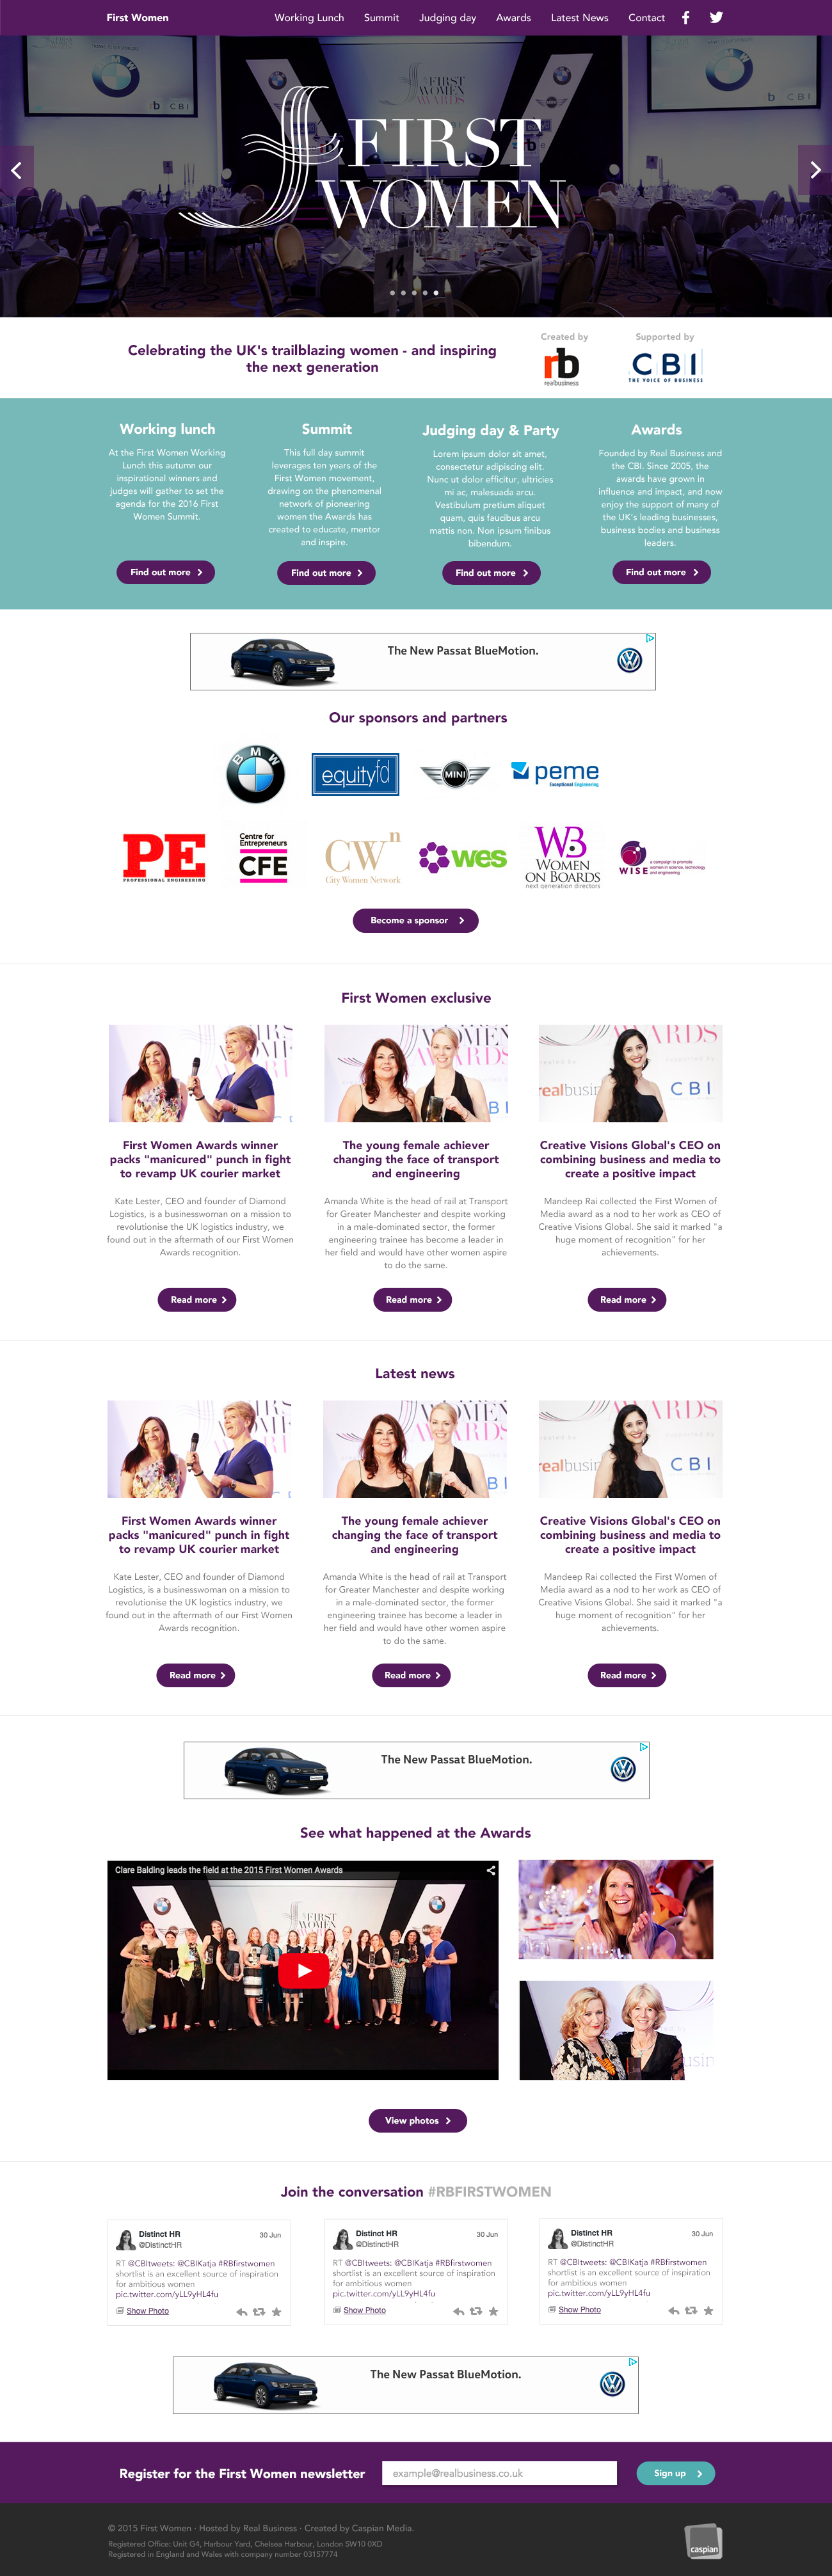 First Women website design